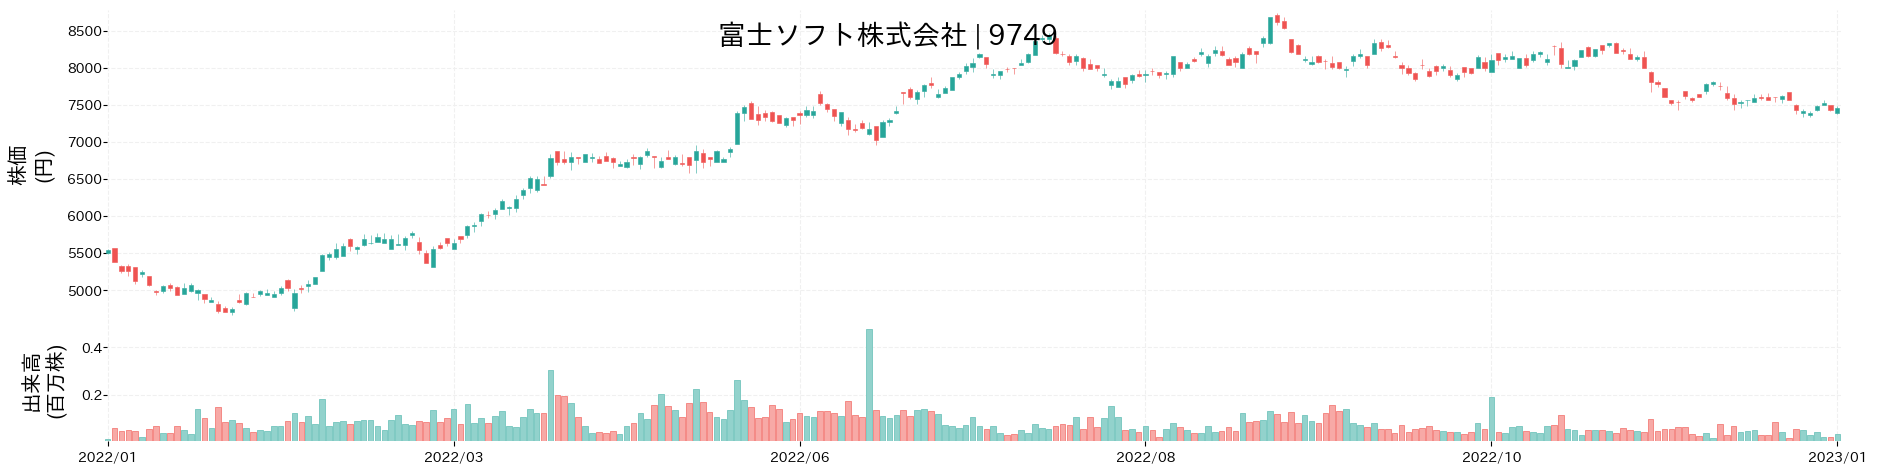 富士ソフトの株価推移(2022)